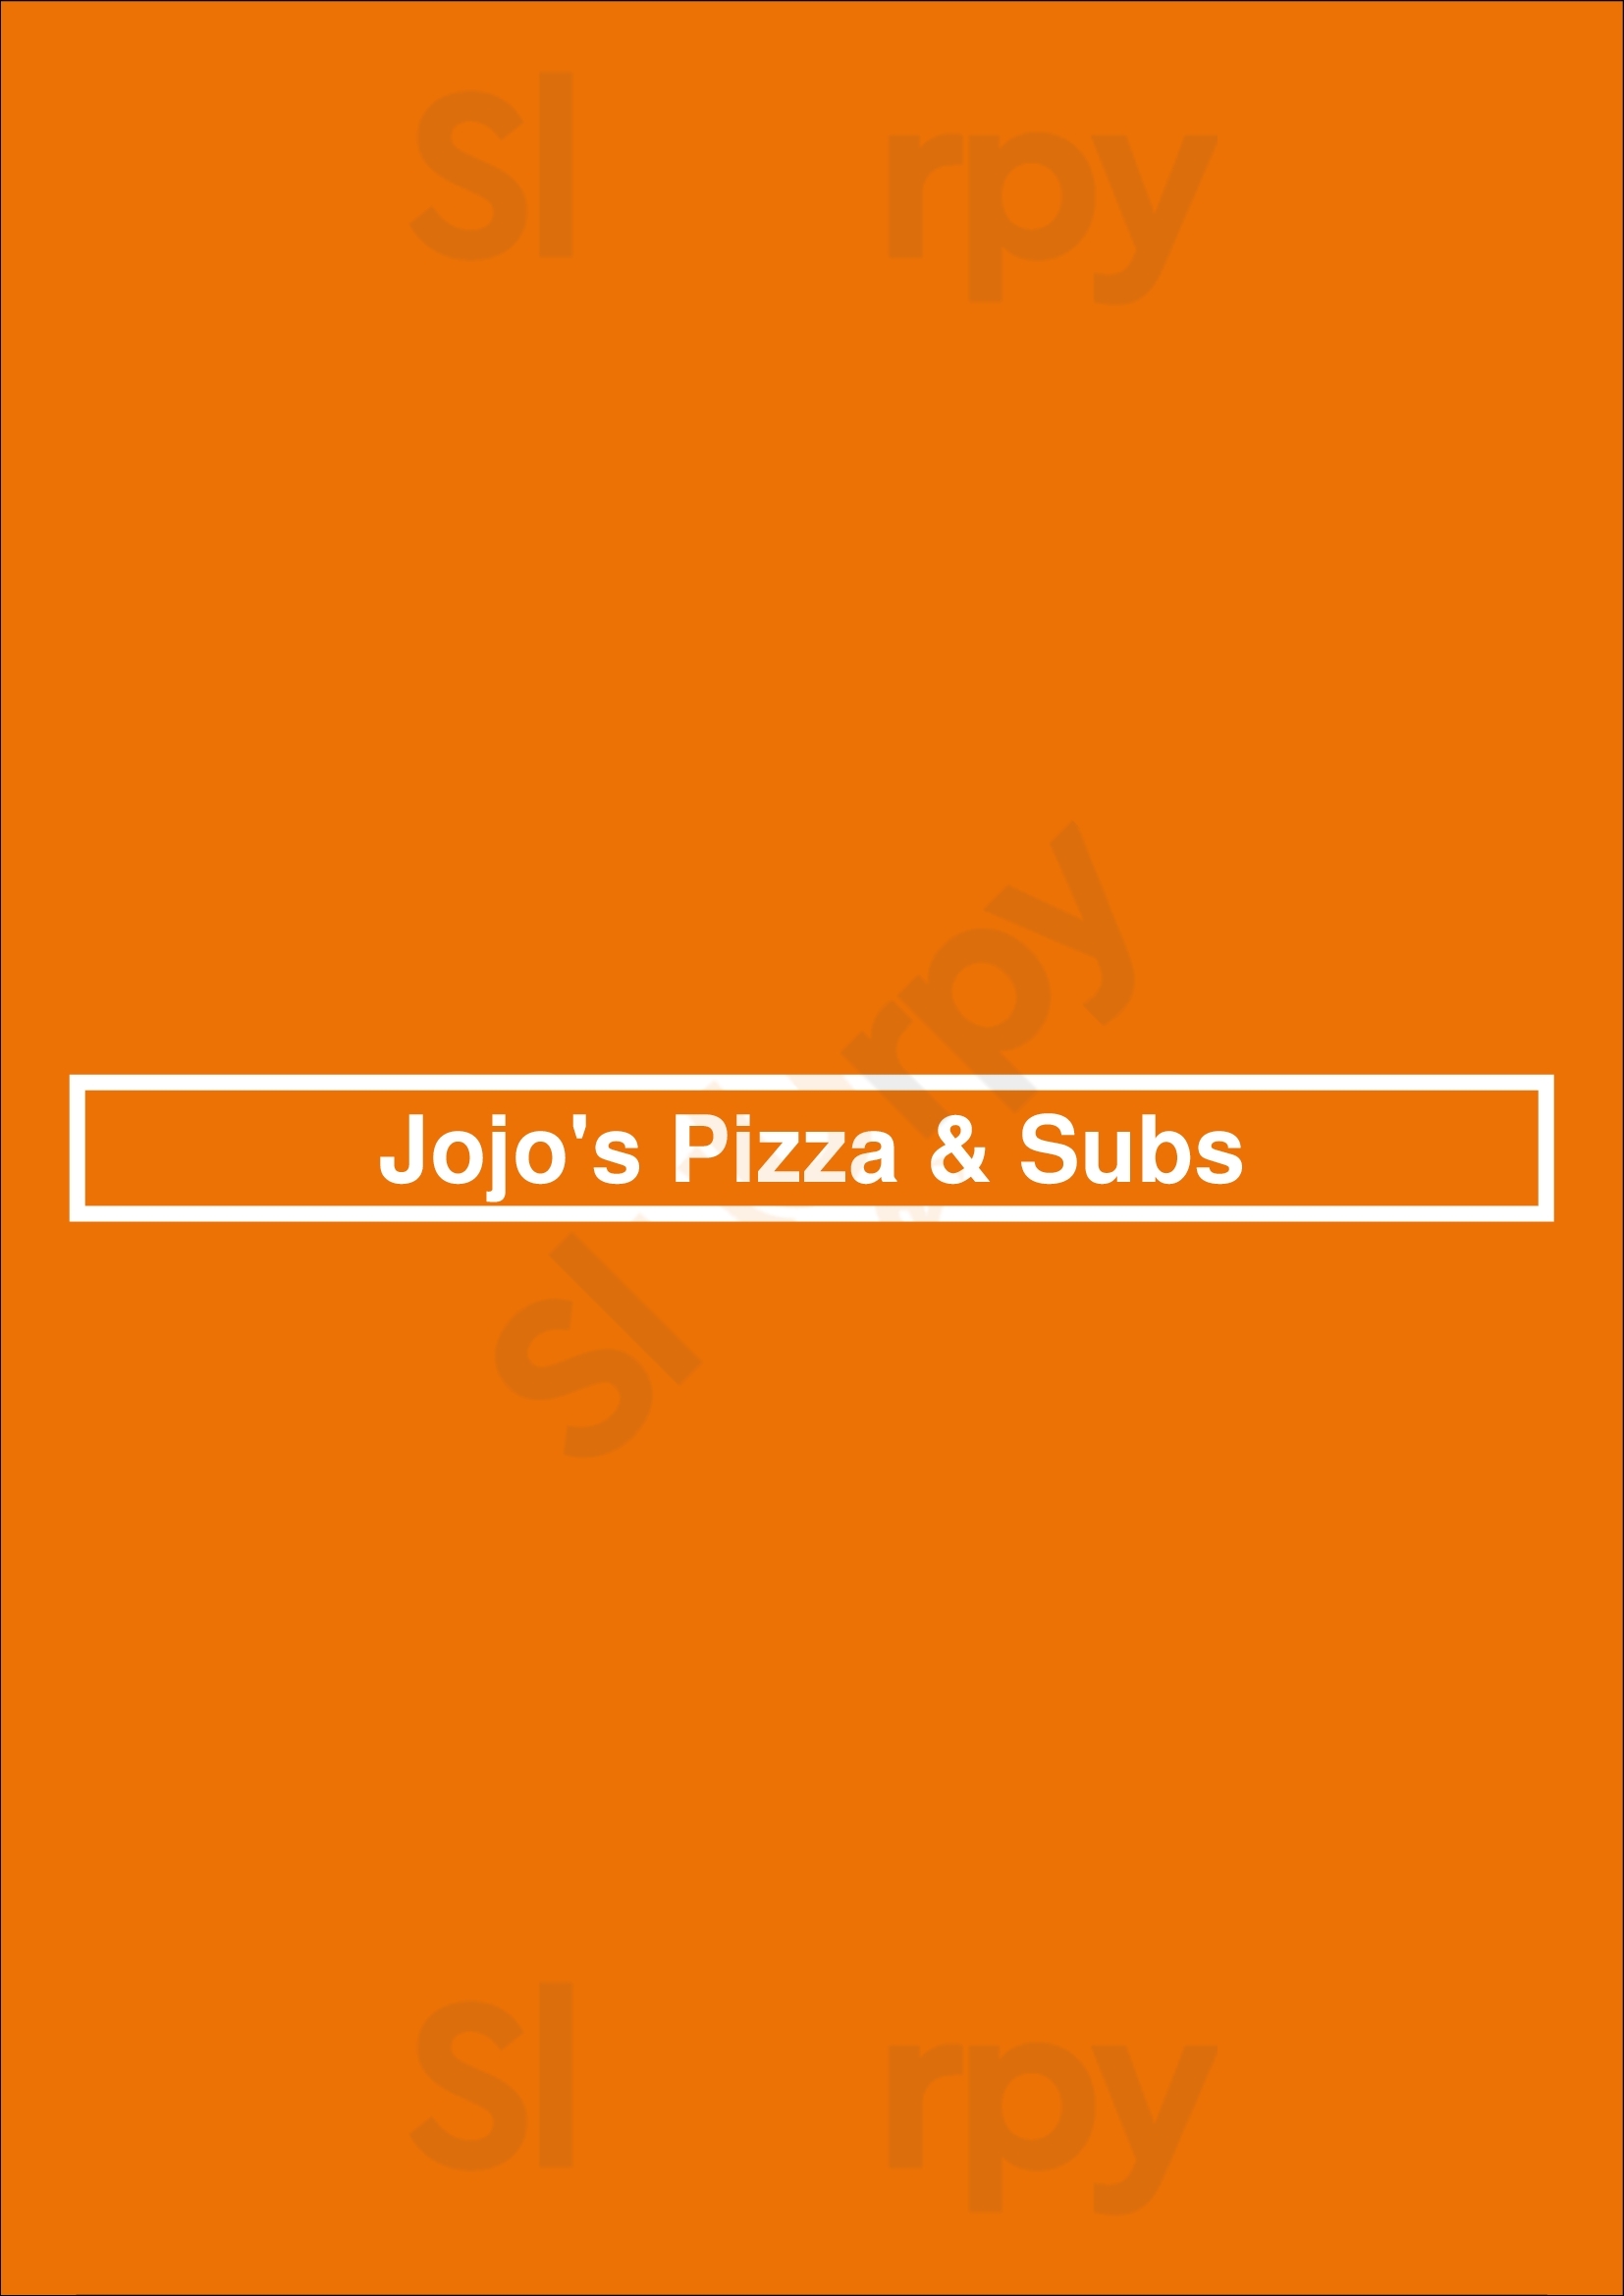 Jojo's Pizza & Subs Ottawa Menu - 1